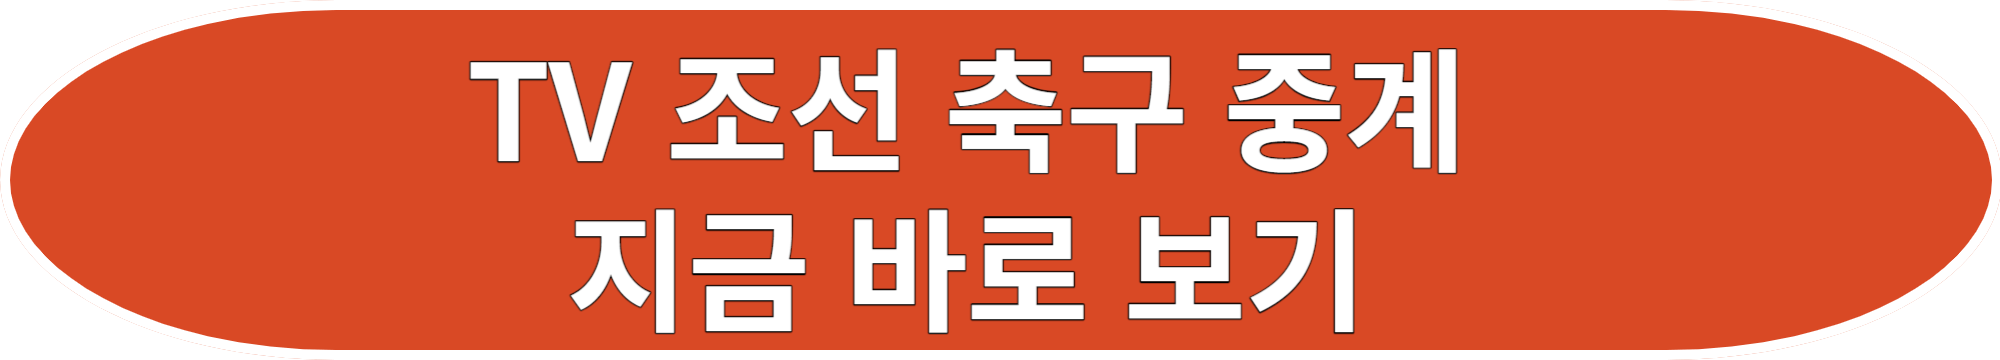 항저우 아시안게임 축구 대표팀 중계 일정